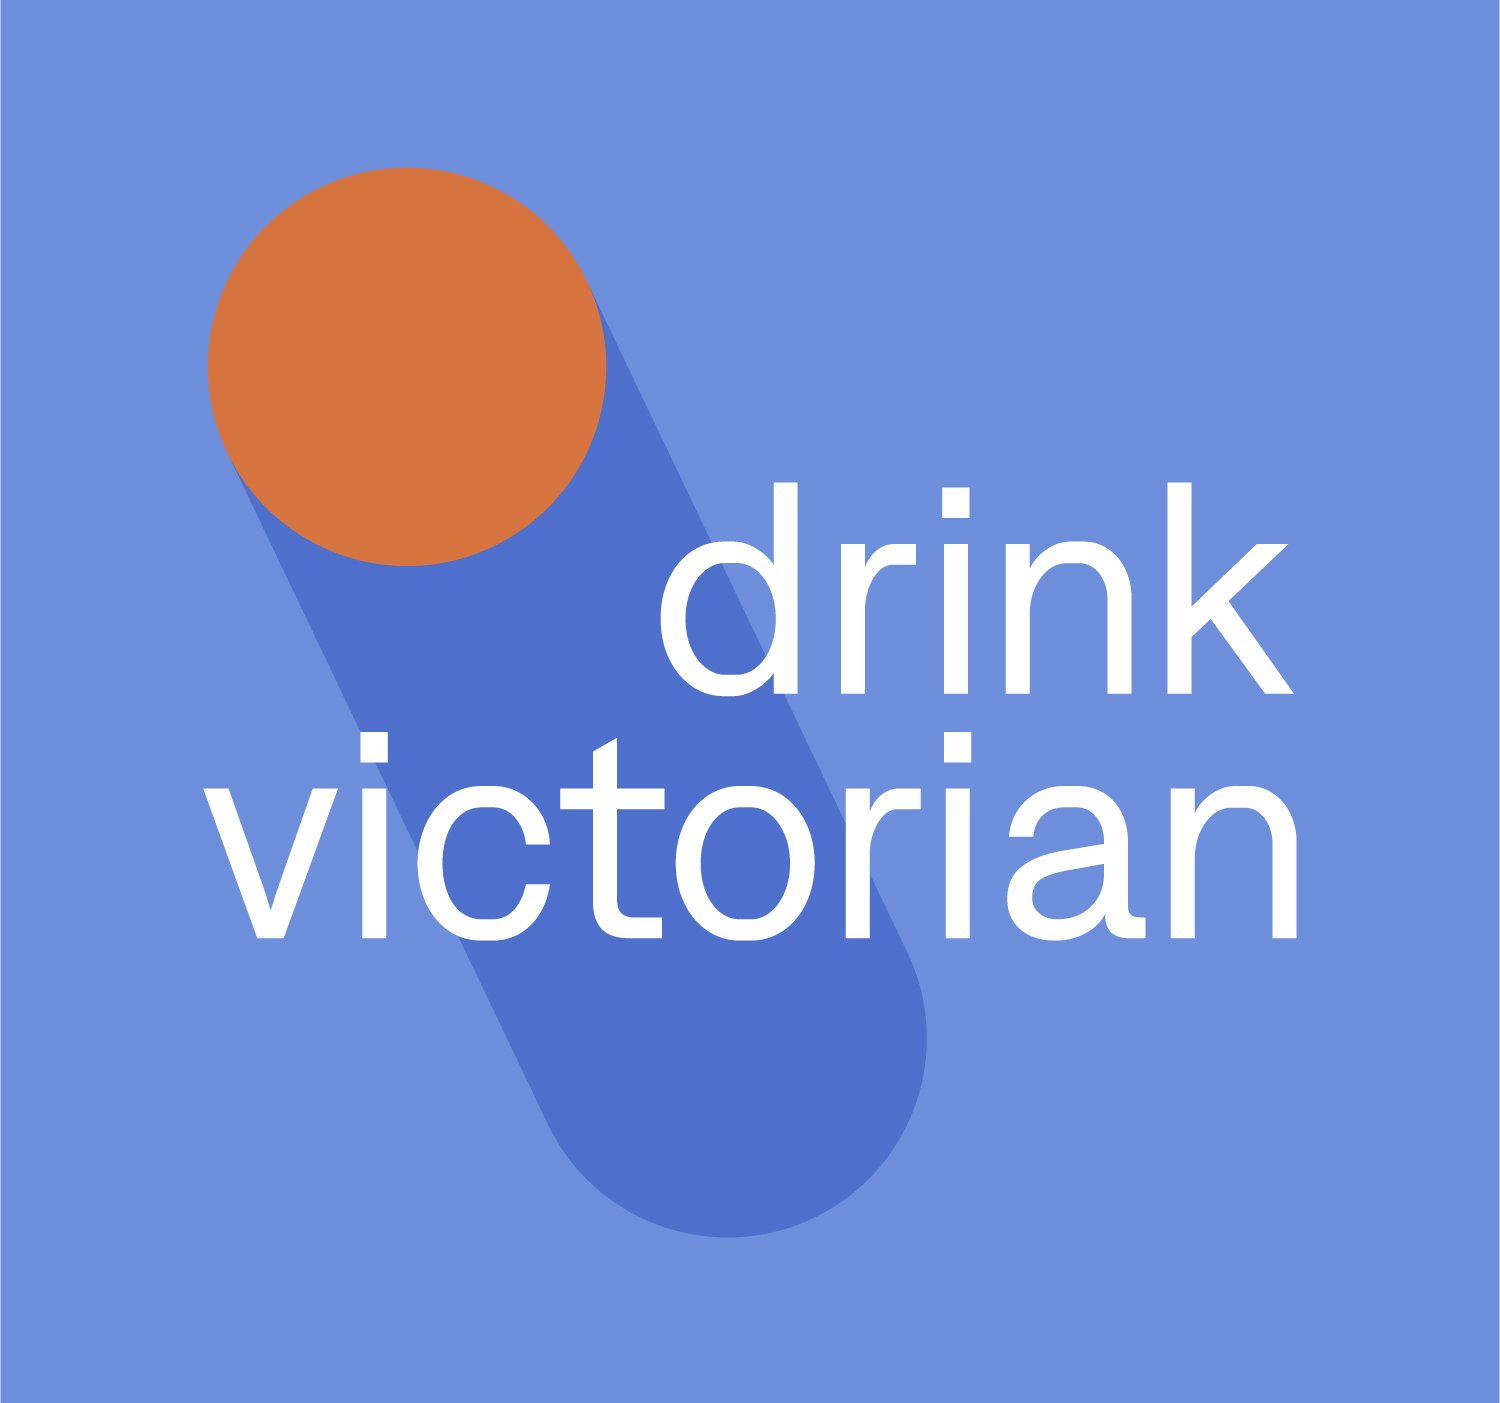 Drink Victorian